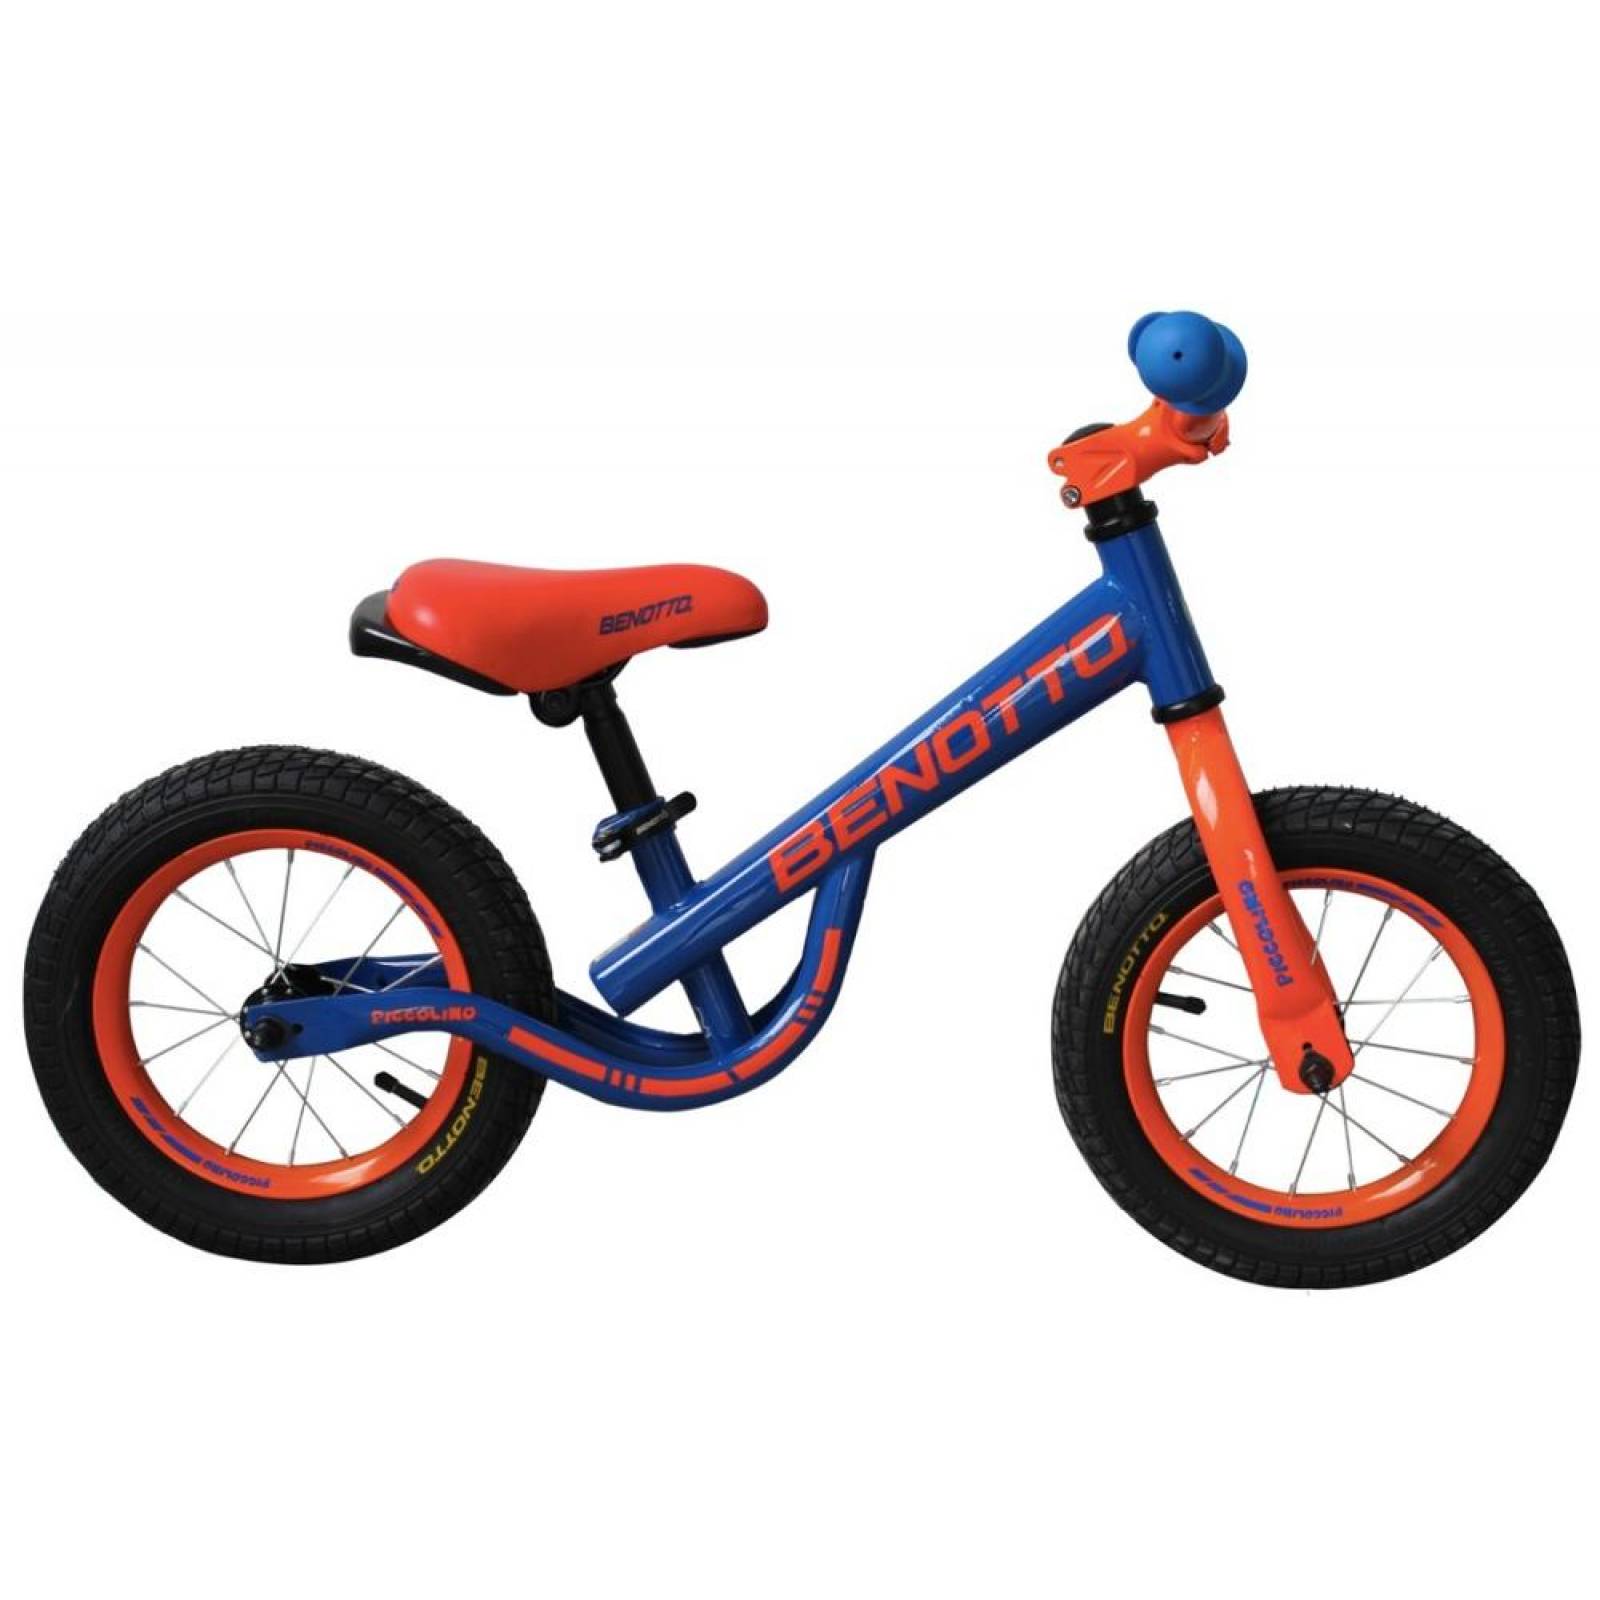 Asiento Ajustable Rolly Toys- RollyUnimog Polizii Edition 2020-Bicicleta Infantil con Pedal 038251 Incluye luz RollyFlashlight neumáticos silenciosos. 